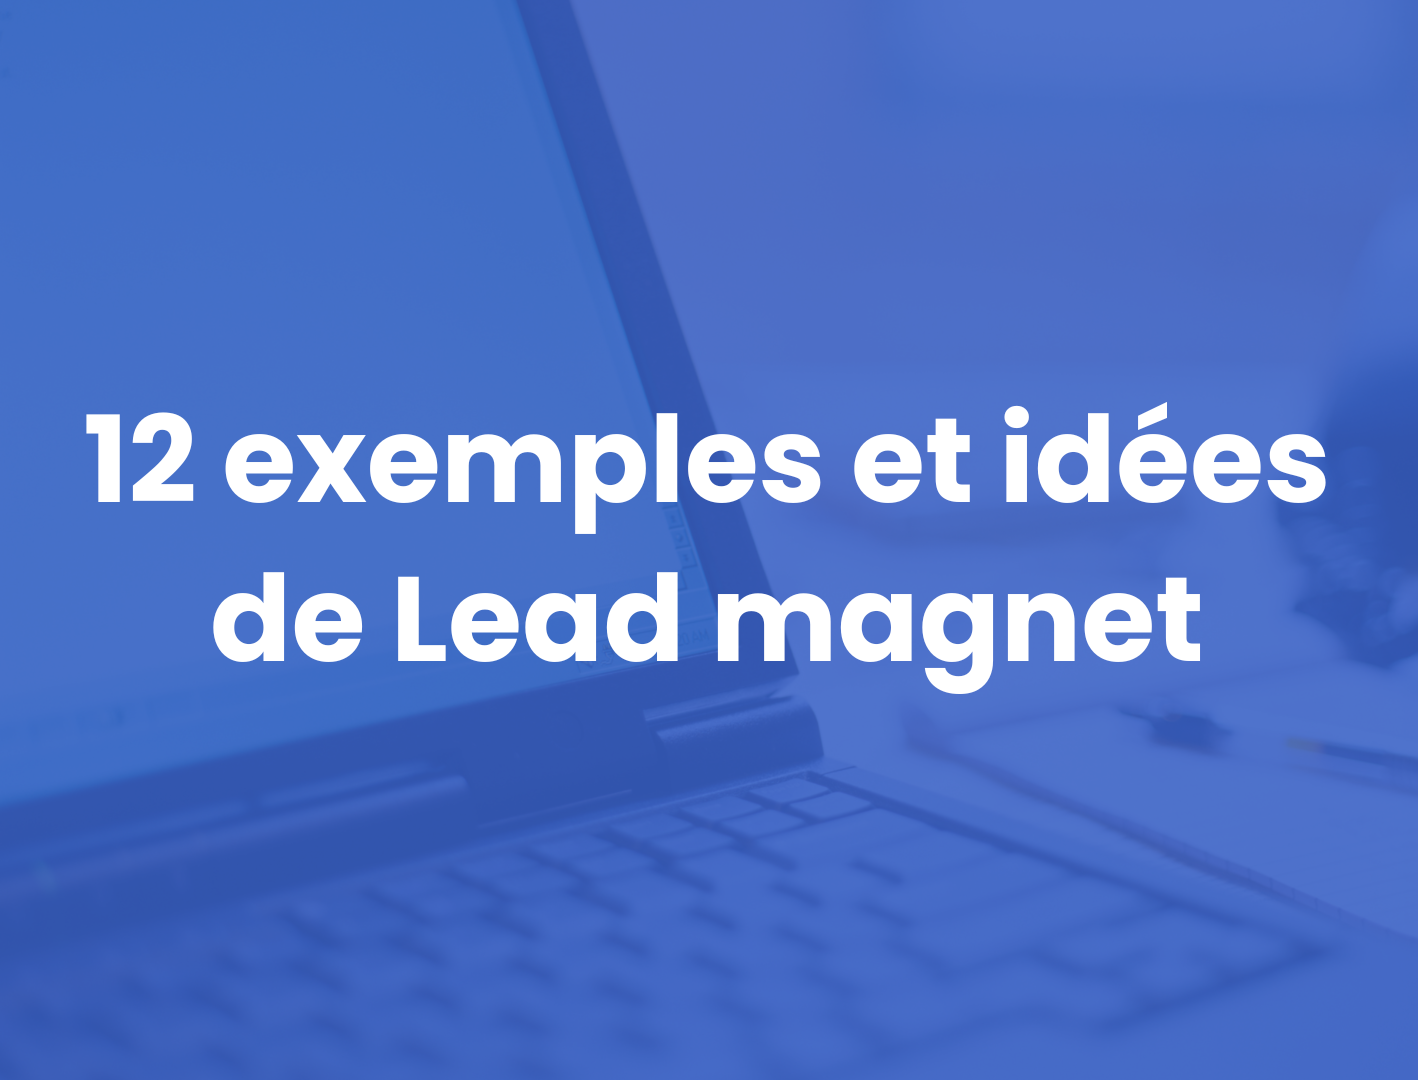 Lead magnet : plus de 12 exemples et un guide pour en créer